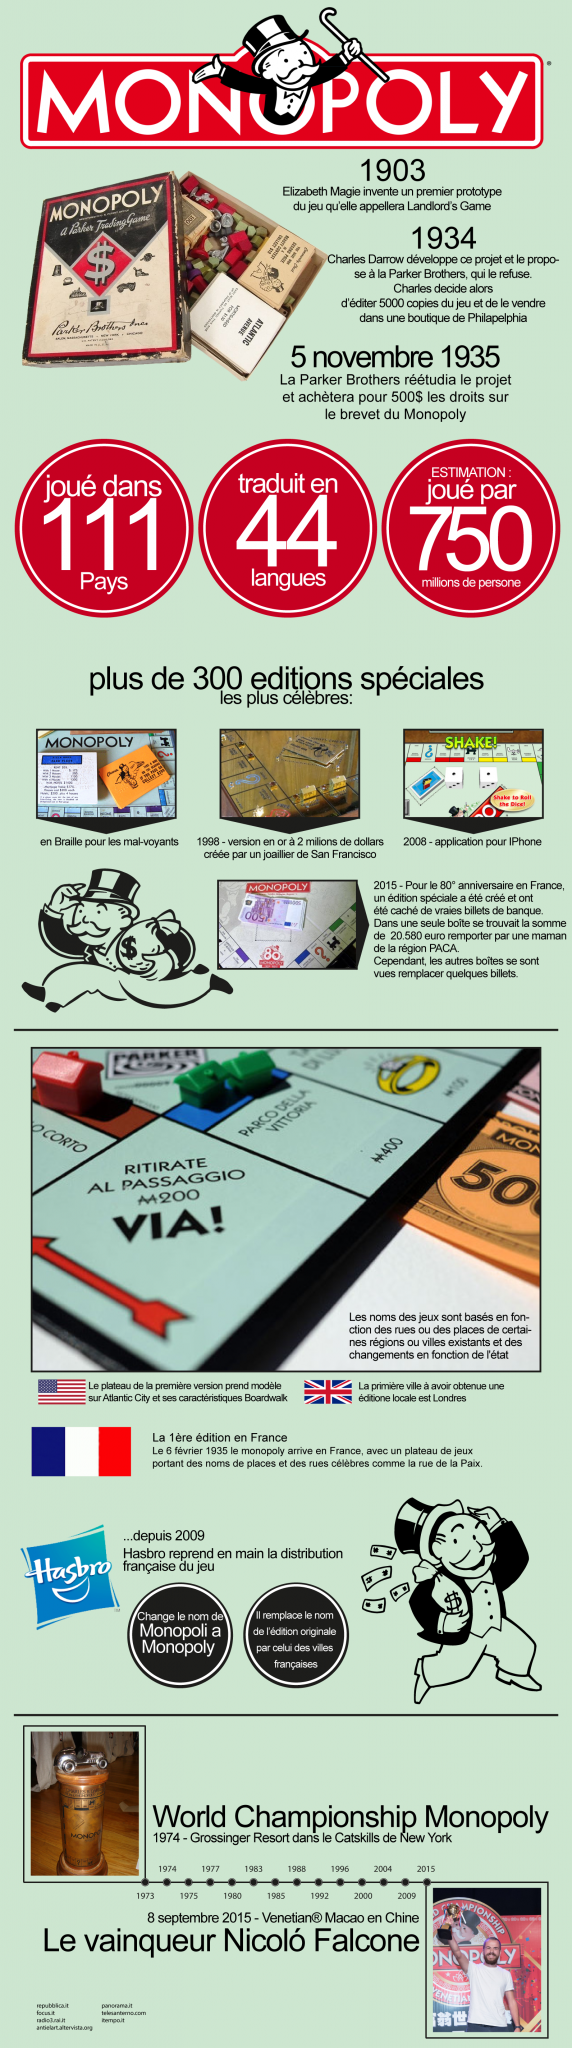 Infographie de Monopoly